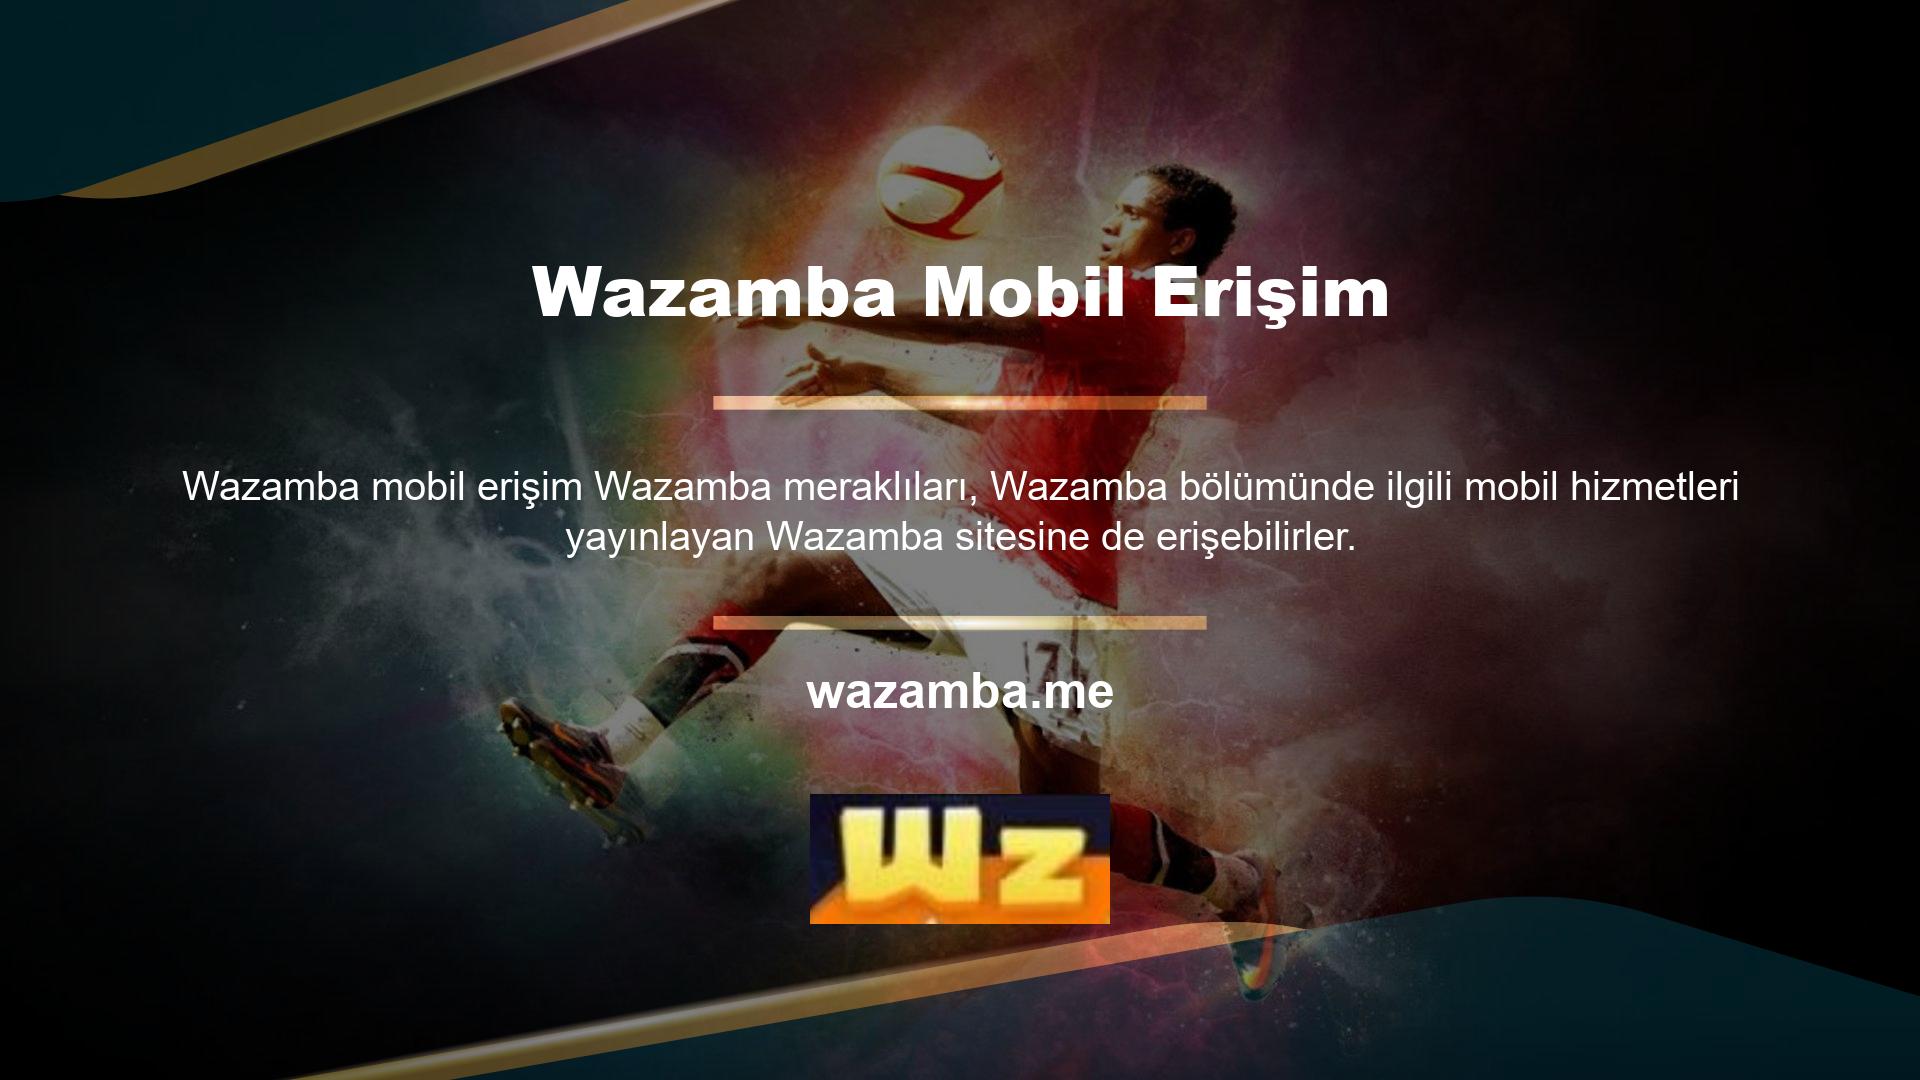 Yine de mobil cihazınızdan Wazamba oyunlarına bağlanabileceksiniz